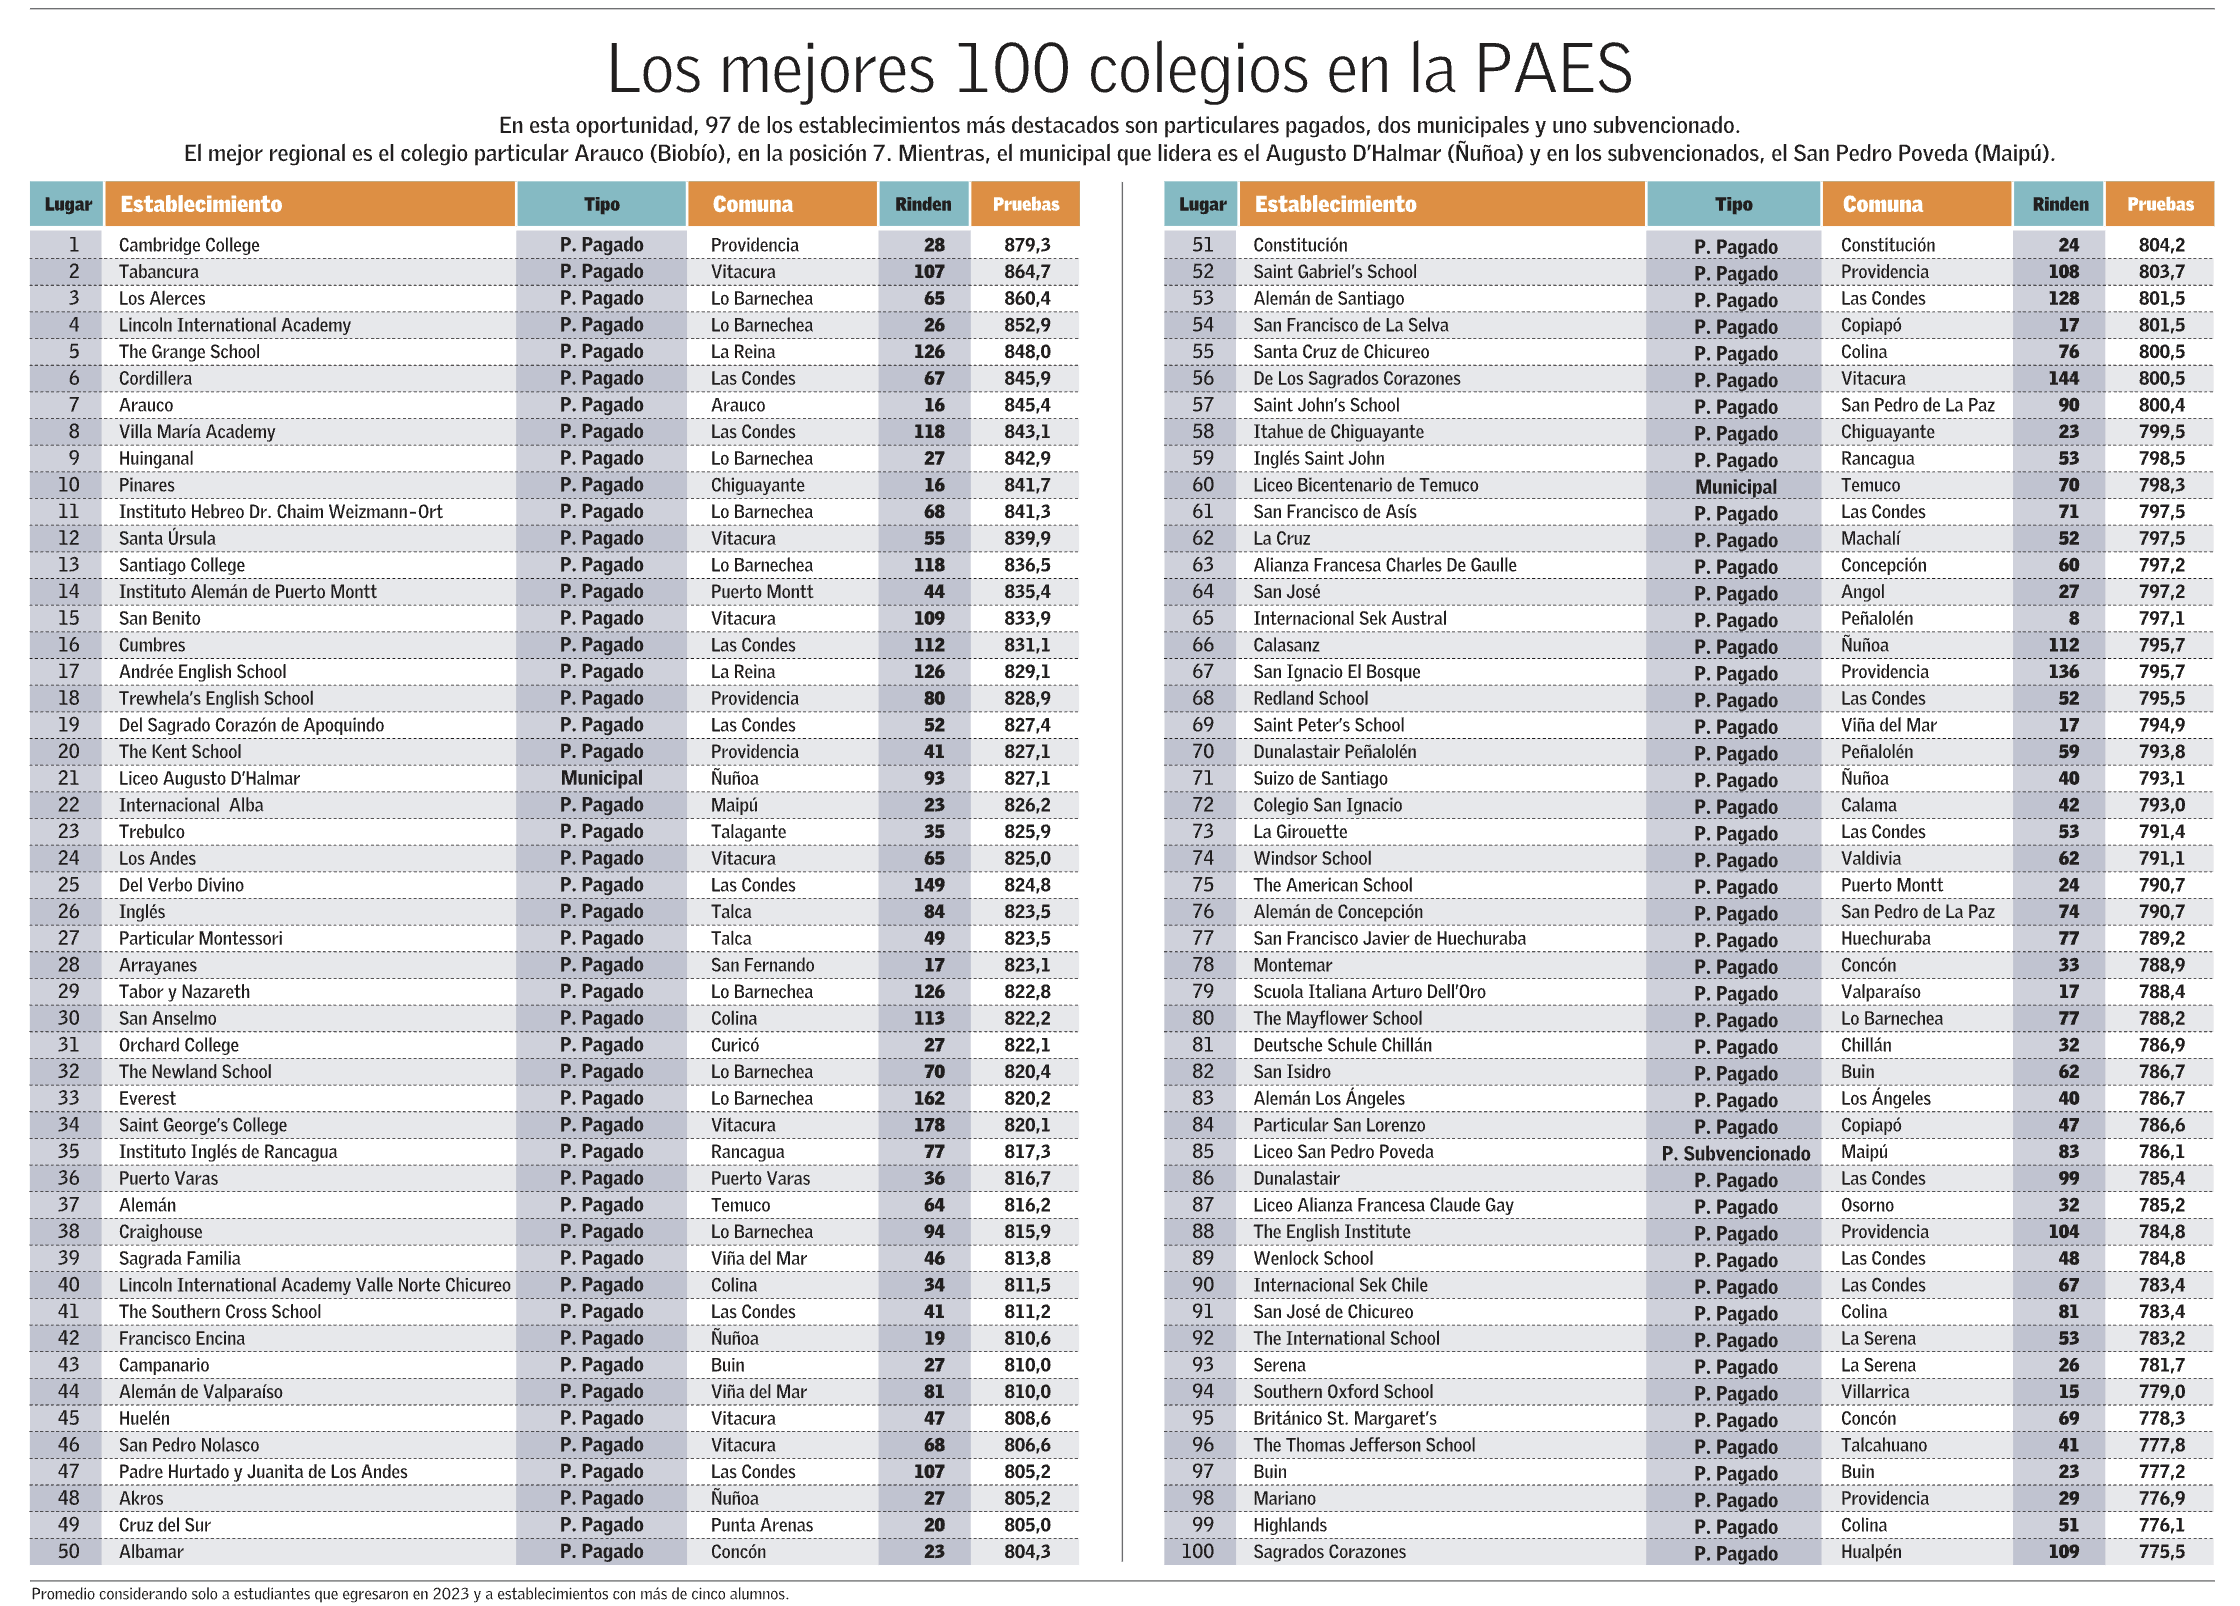 Ranking de los 100 mejores colegios según los resultados de la PAES 2023